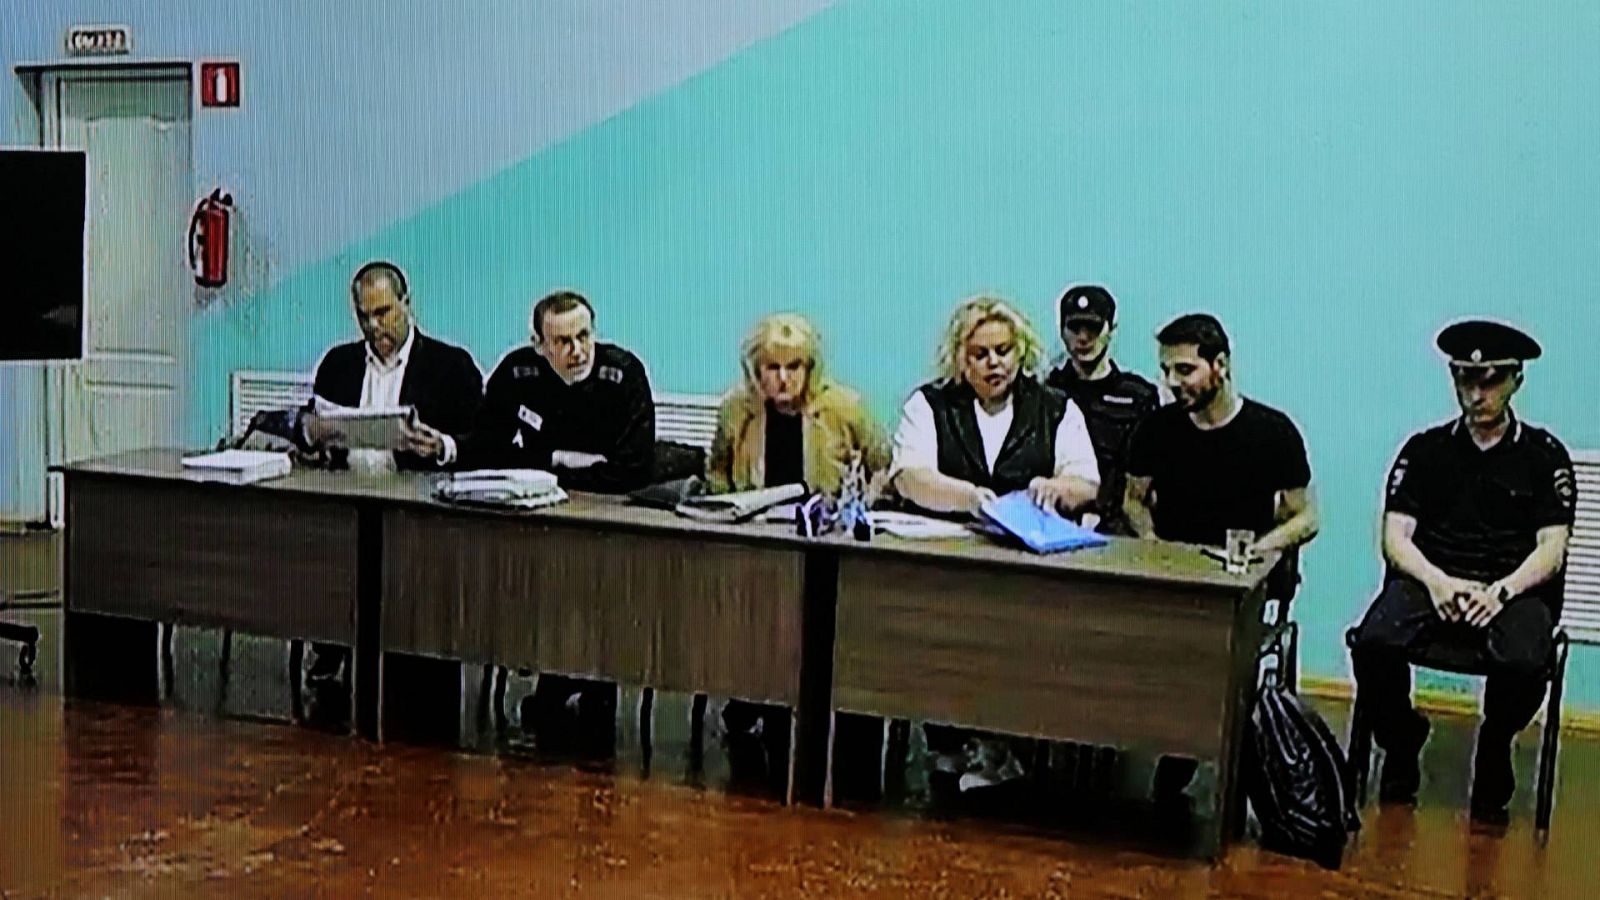 El opositor ruso Alexei Navalni (segundo por la izquierda) durante el juicio que se sigue contra él en la colonia penal IK-6 en la región de Vladimir, en Rusia, el 19 de junio. REUTERS/Evgenia Novozhenina